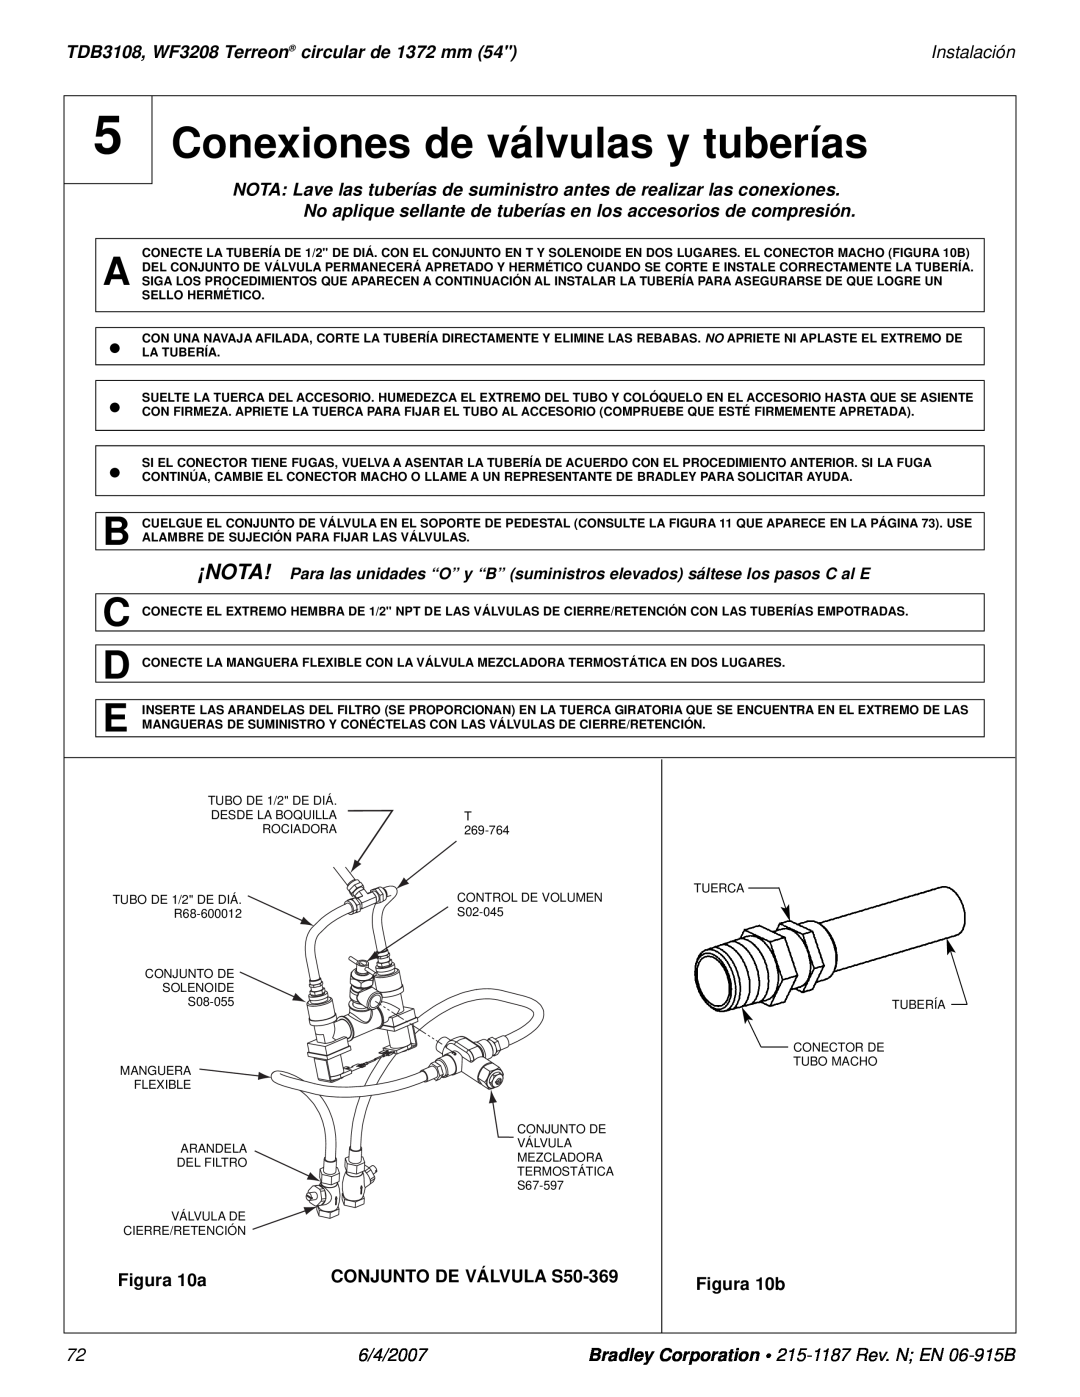 Bradley Smoker Conexiones de válvulas y tuberías, TDB3108, WF3208 Terreon circular de 1372 mm, Instalación, 6/4/2007 